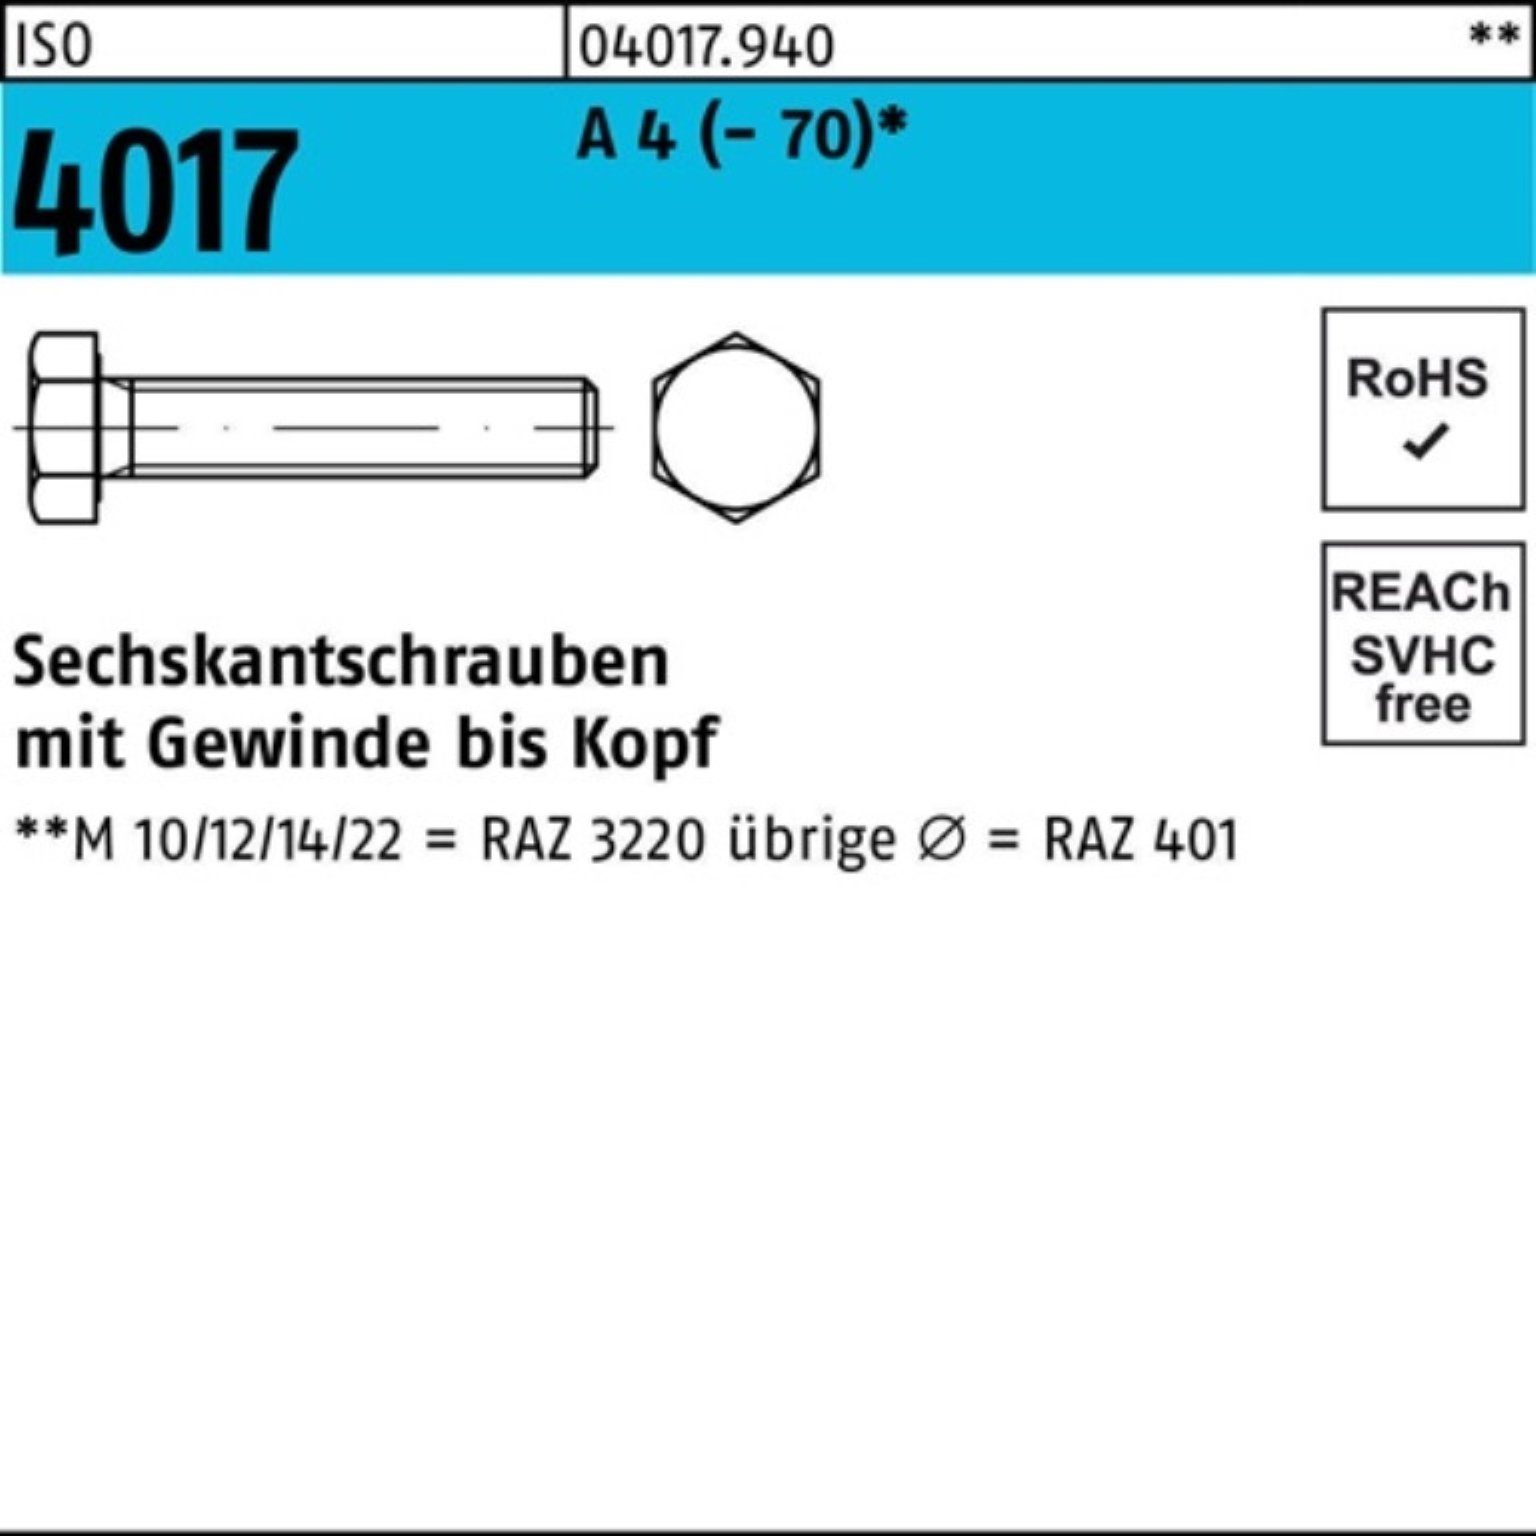 Bufab Sechskantschraube 100er Pack Sechskantschraube ISO 4017 VG M27x 150 A 4 (70) 1 Stück